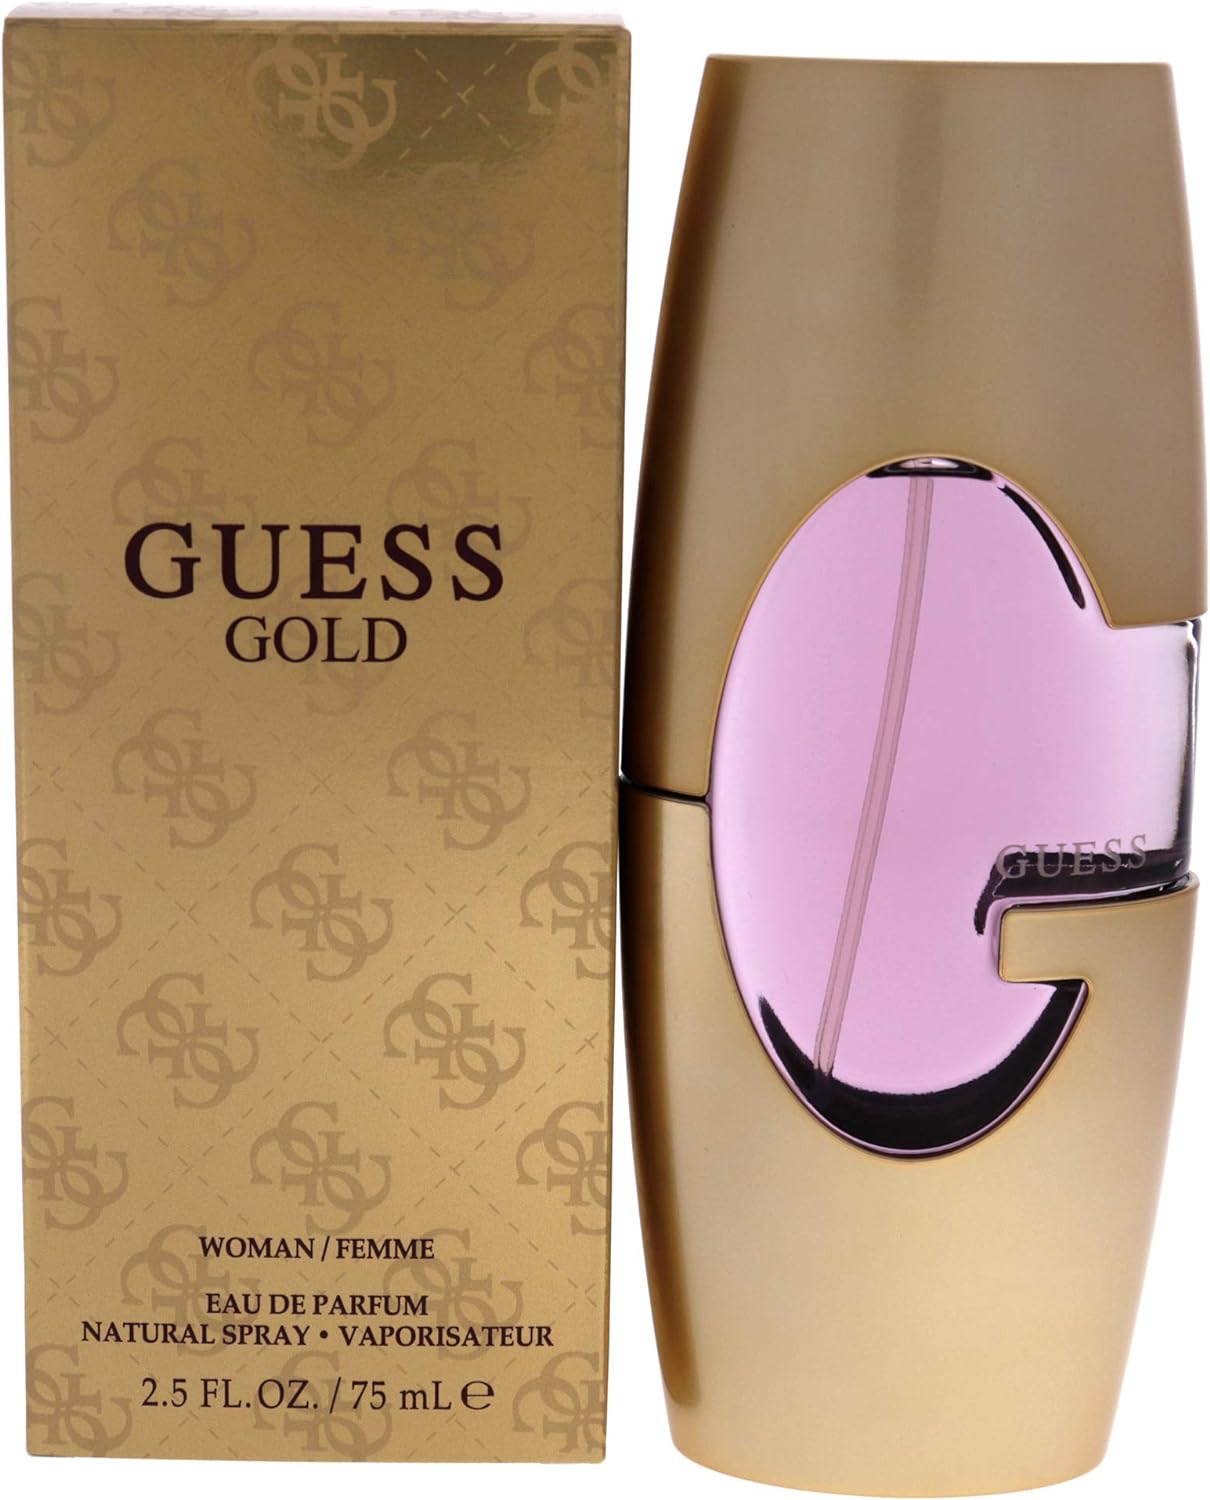 Guess Gold by Guess 75 ml Eau De Perfume Spray for Women